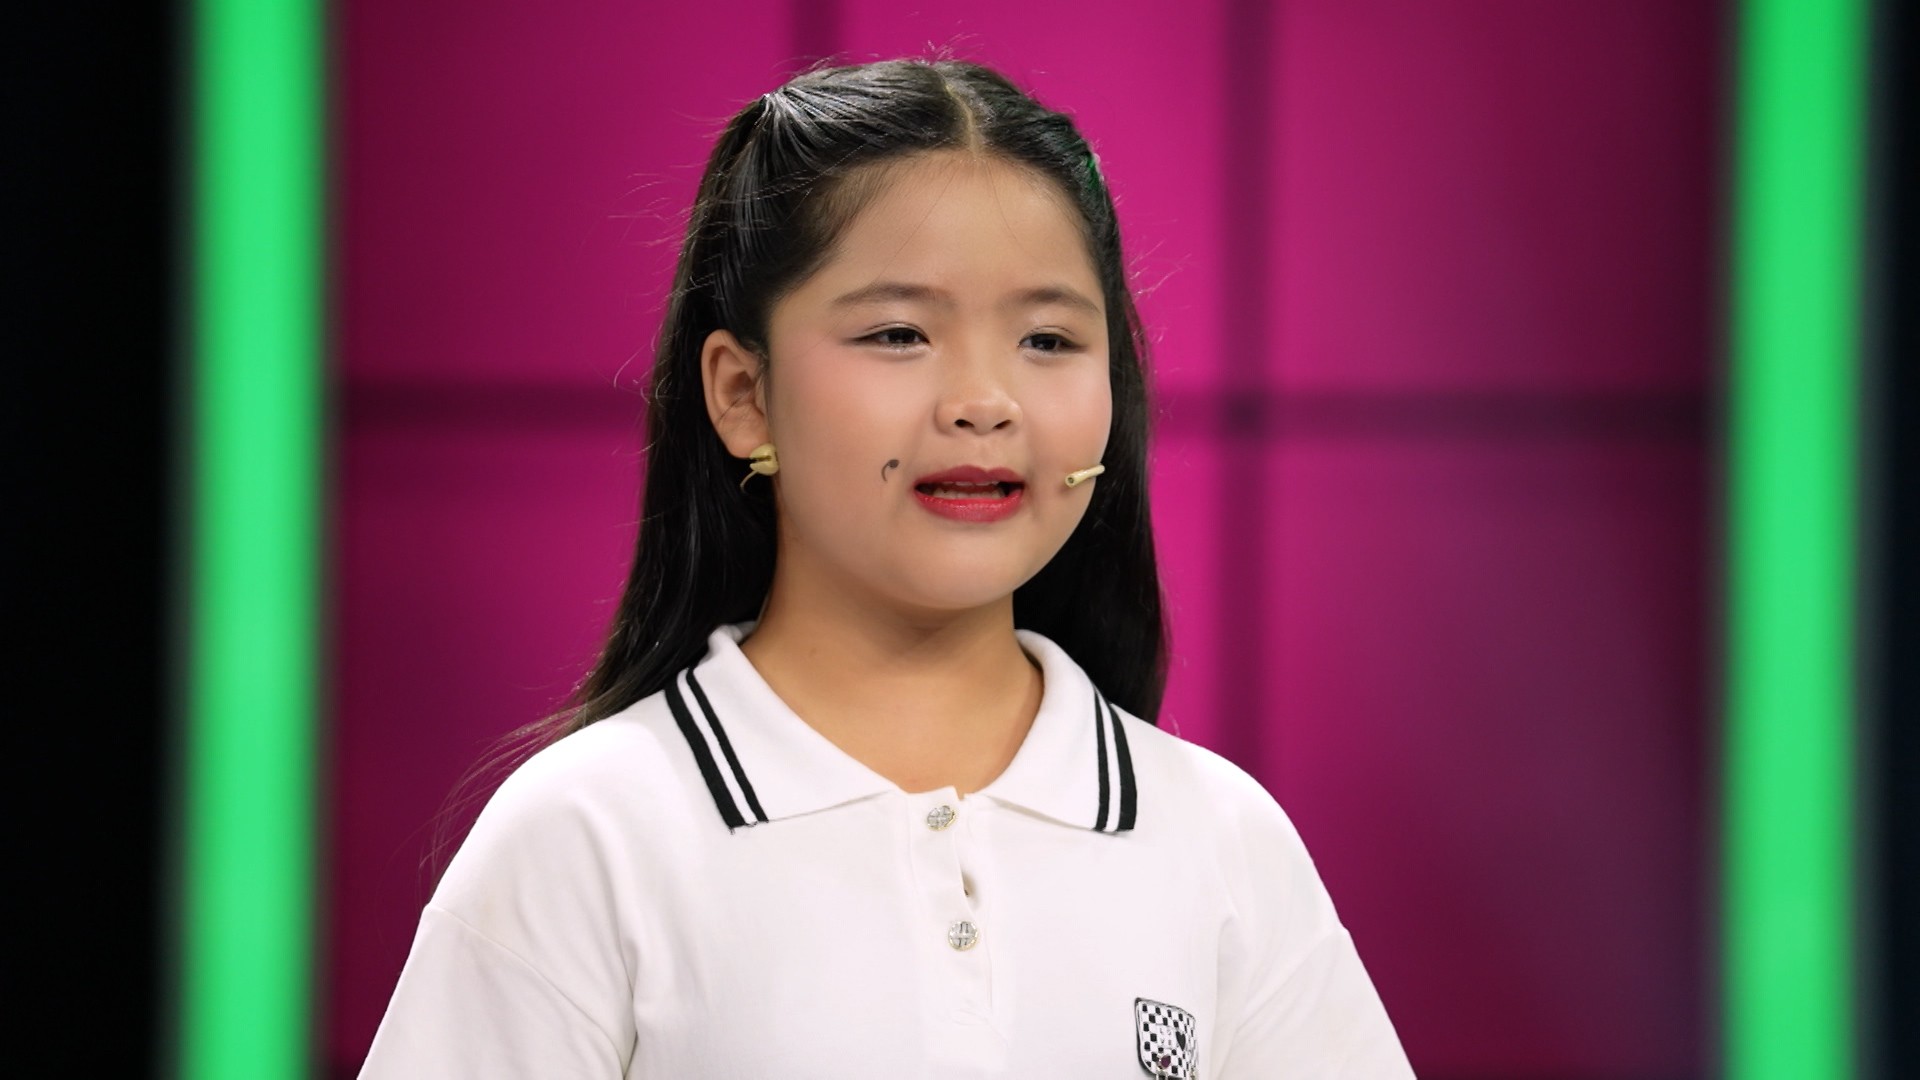 Đối đáp thông minh, duyên dáng cô bé Yến Linh chiến thắng tập 4 'Tuyệt kỹ tiếu lâm'